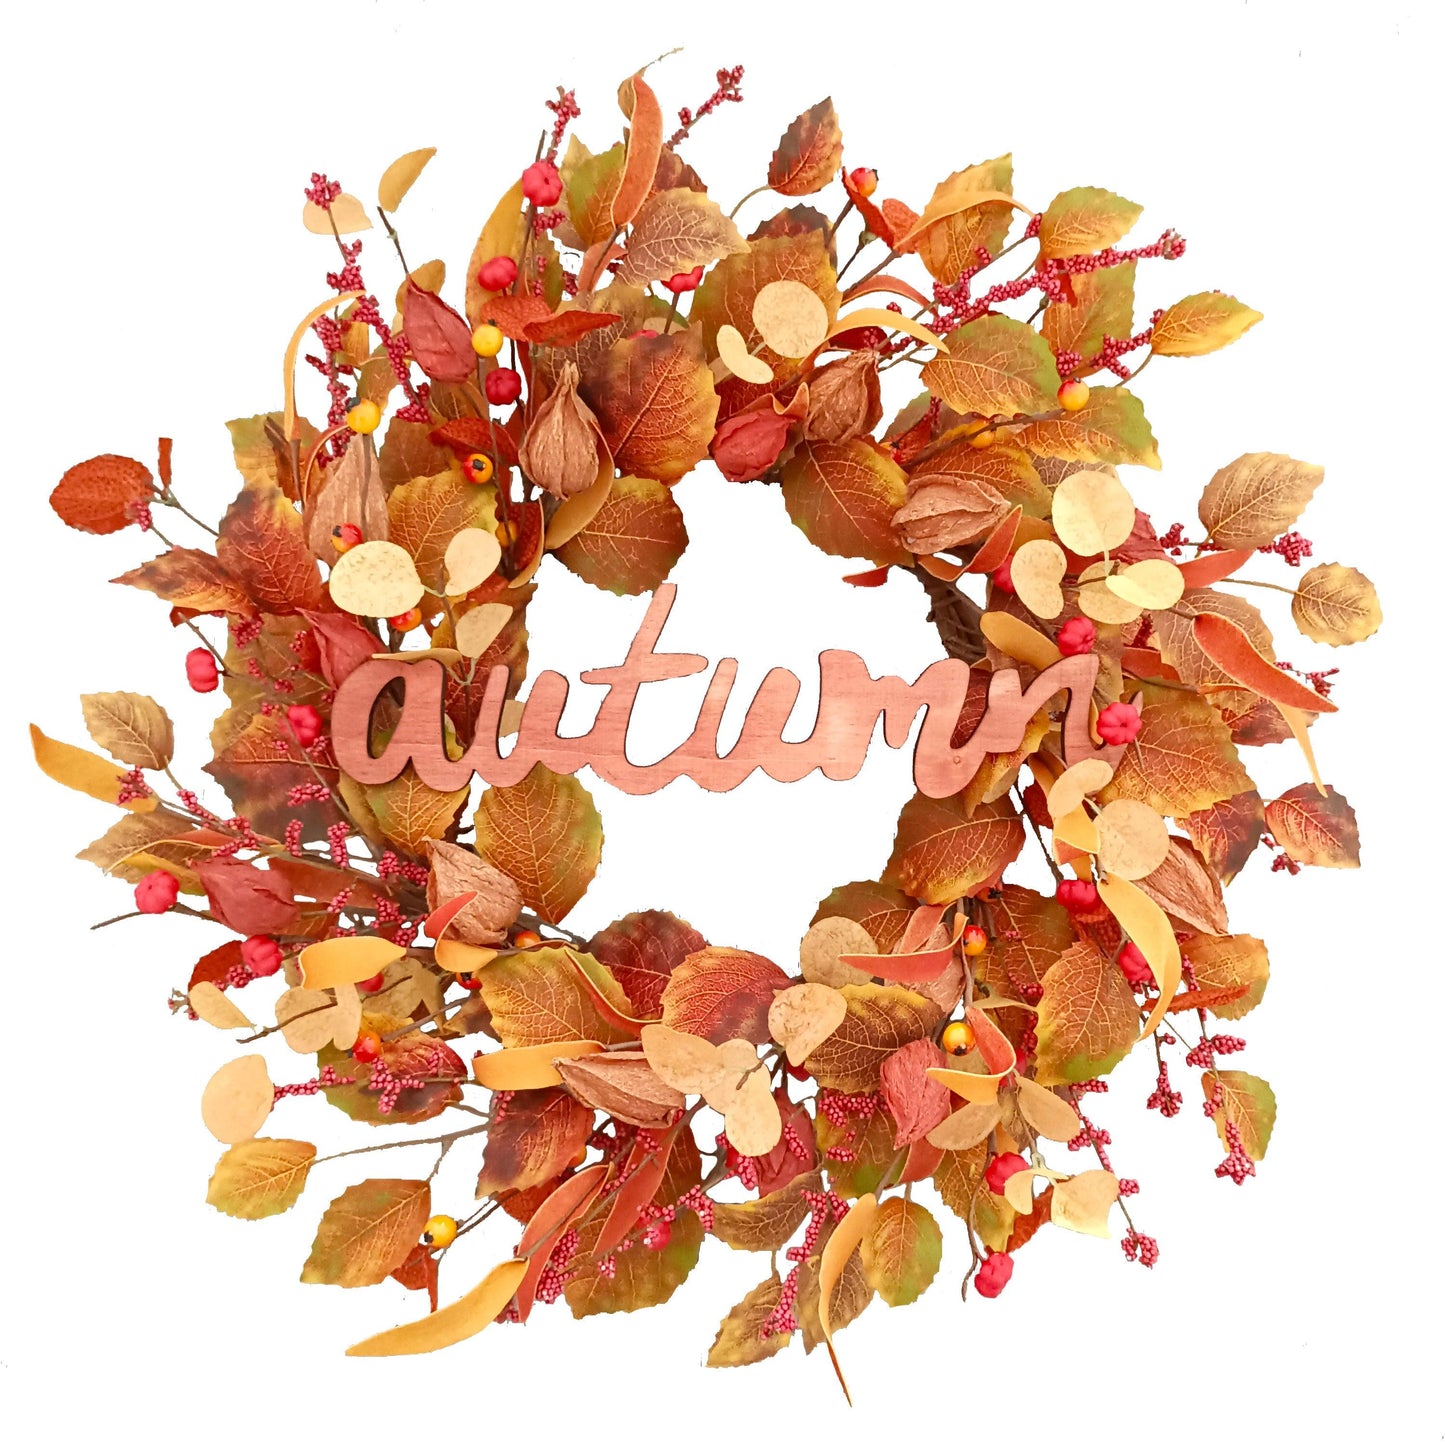 22-Inch Physalis Wreath Fall Wreaths for Front Door with Golden Berries